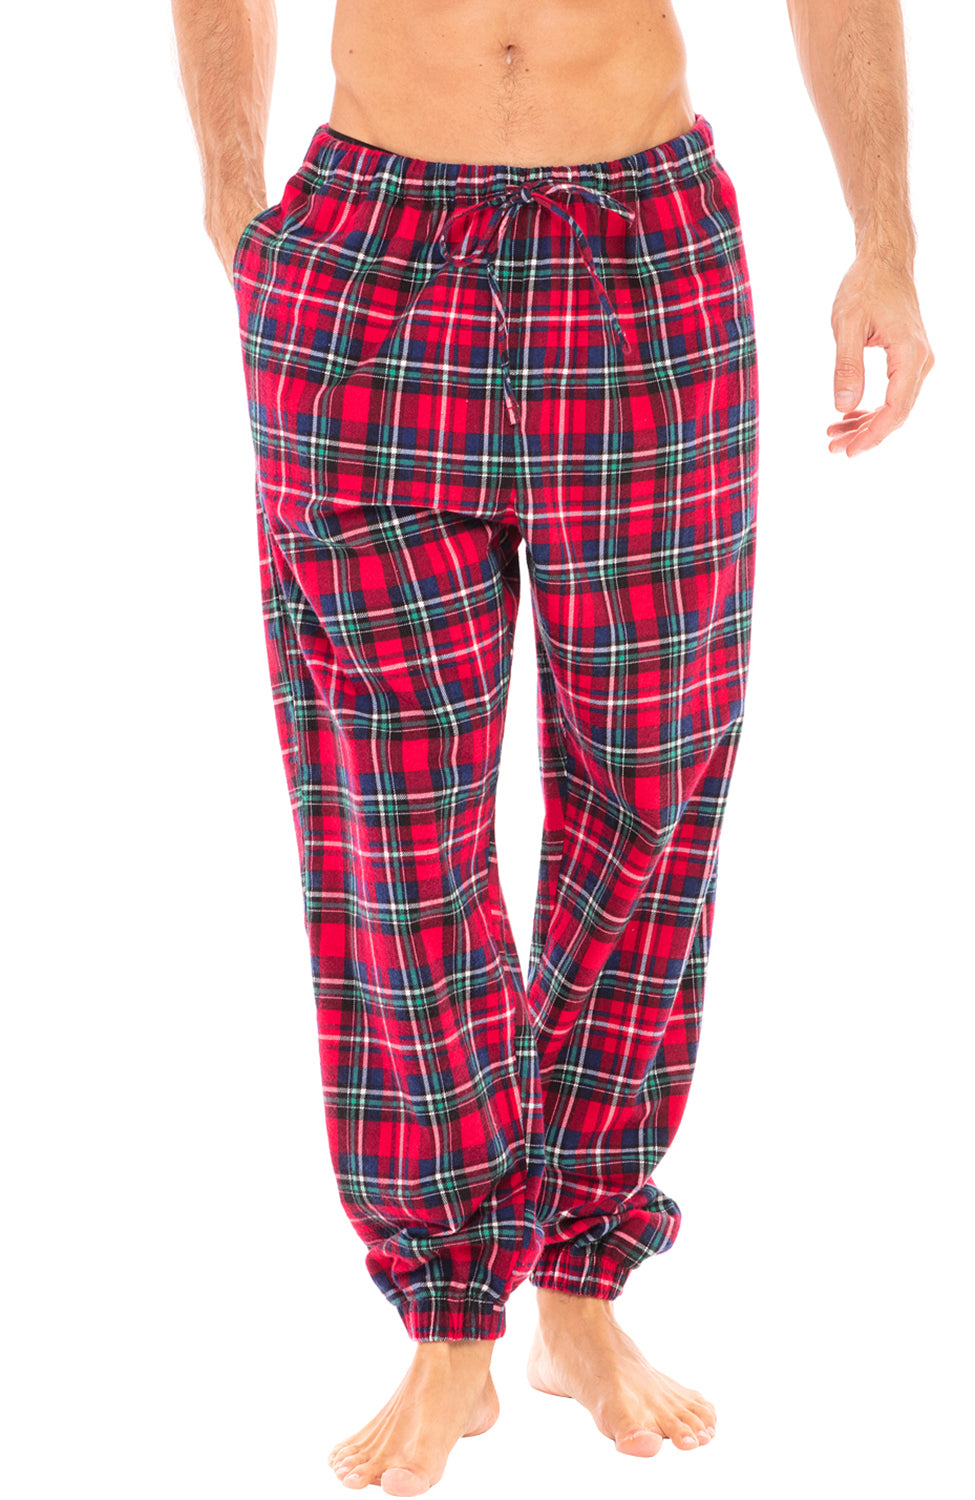 Womens Pajama Pants,Womens Pajama Pants Plaid Pants Red And Black Plaid  Pajama Pants Christmas Bottoms Pajamas Red Plaid Pj Pants Black And White  Pajama Pants Womens Tall 